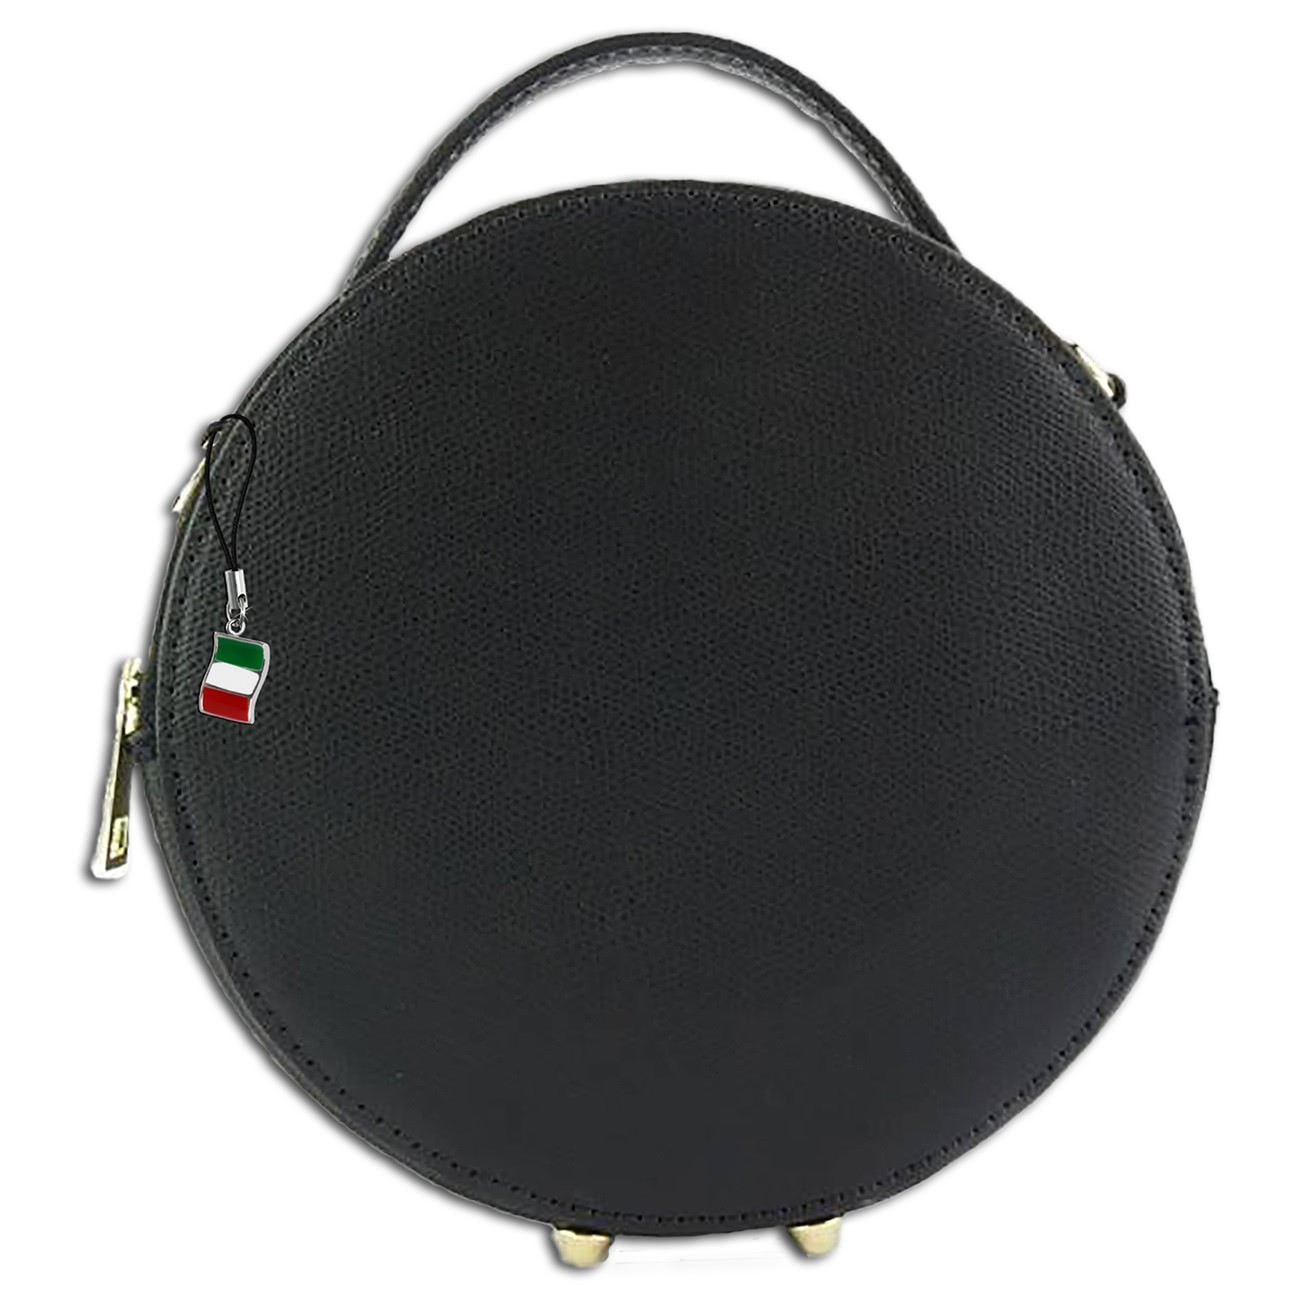 Florence runde Damen Schultertasche echtes Leder Handtasche schwarz OTF123S